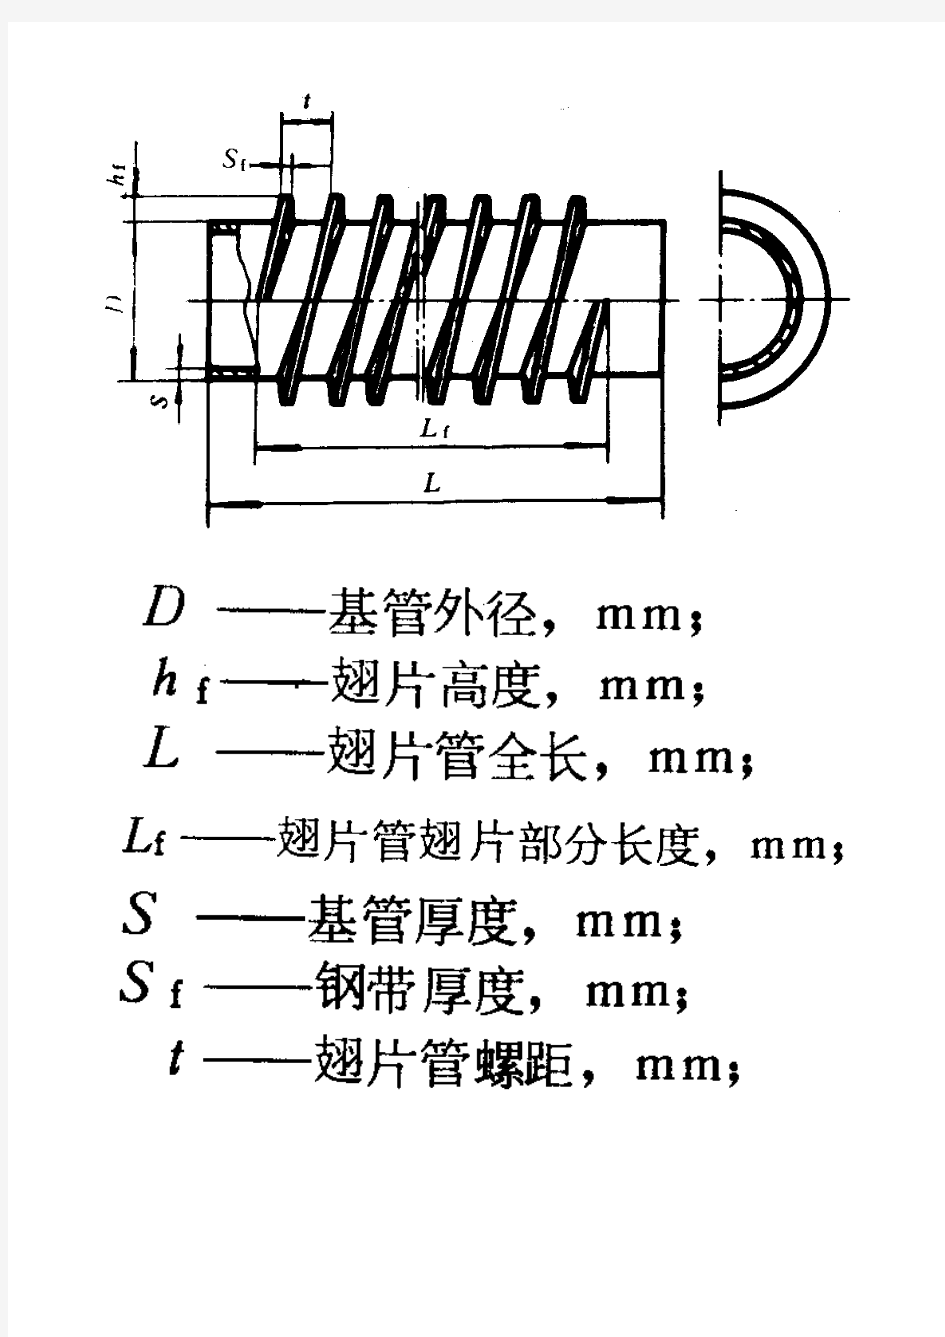 高频焊螺旋翅片管规格及参数表